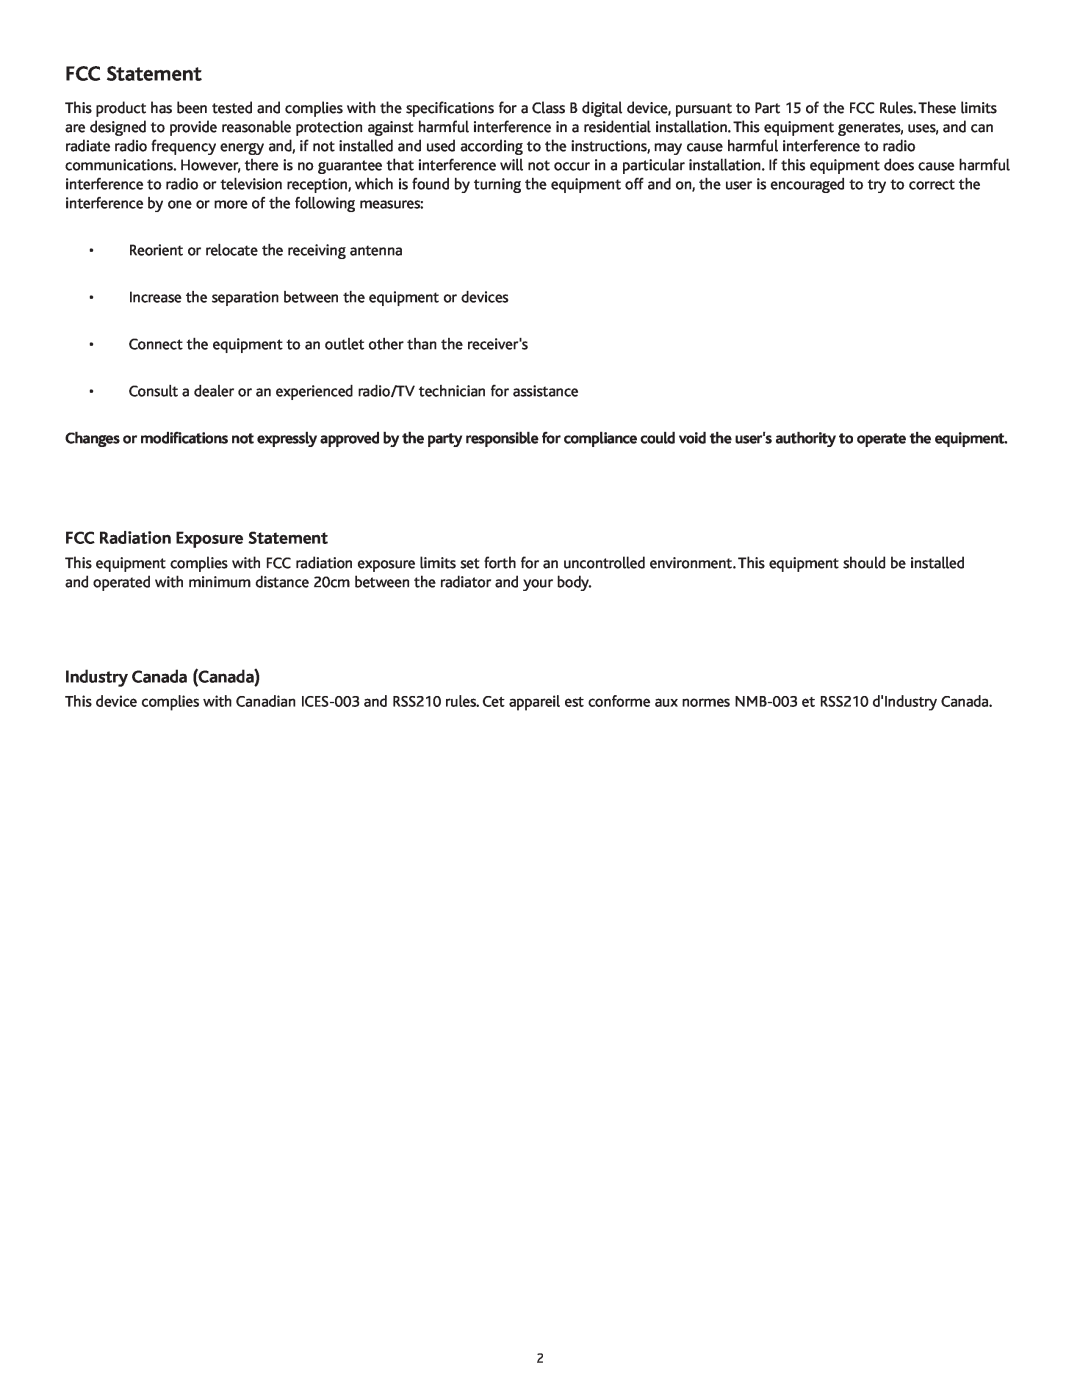 Altec Lansing PT8051 manual FCC Radiation Exposure Statement, Industry Canada Canada, FCC Statement 